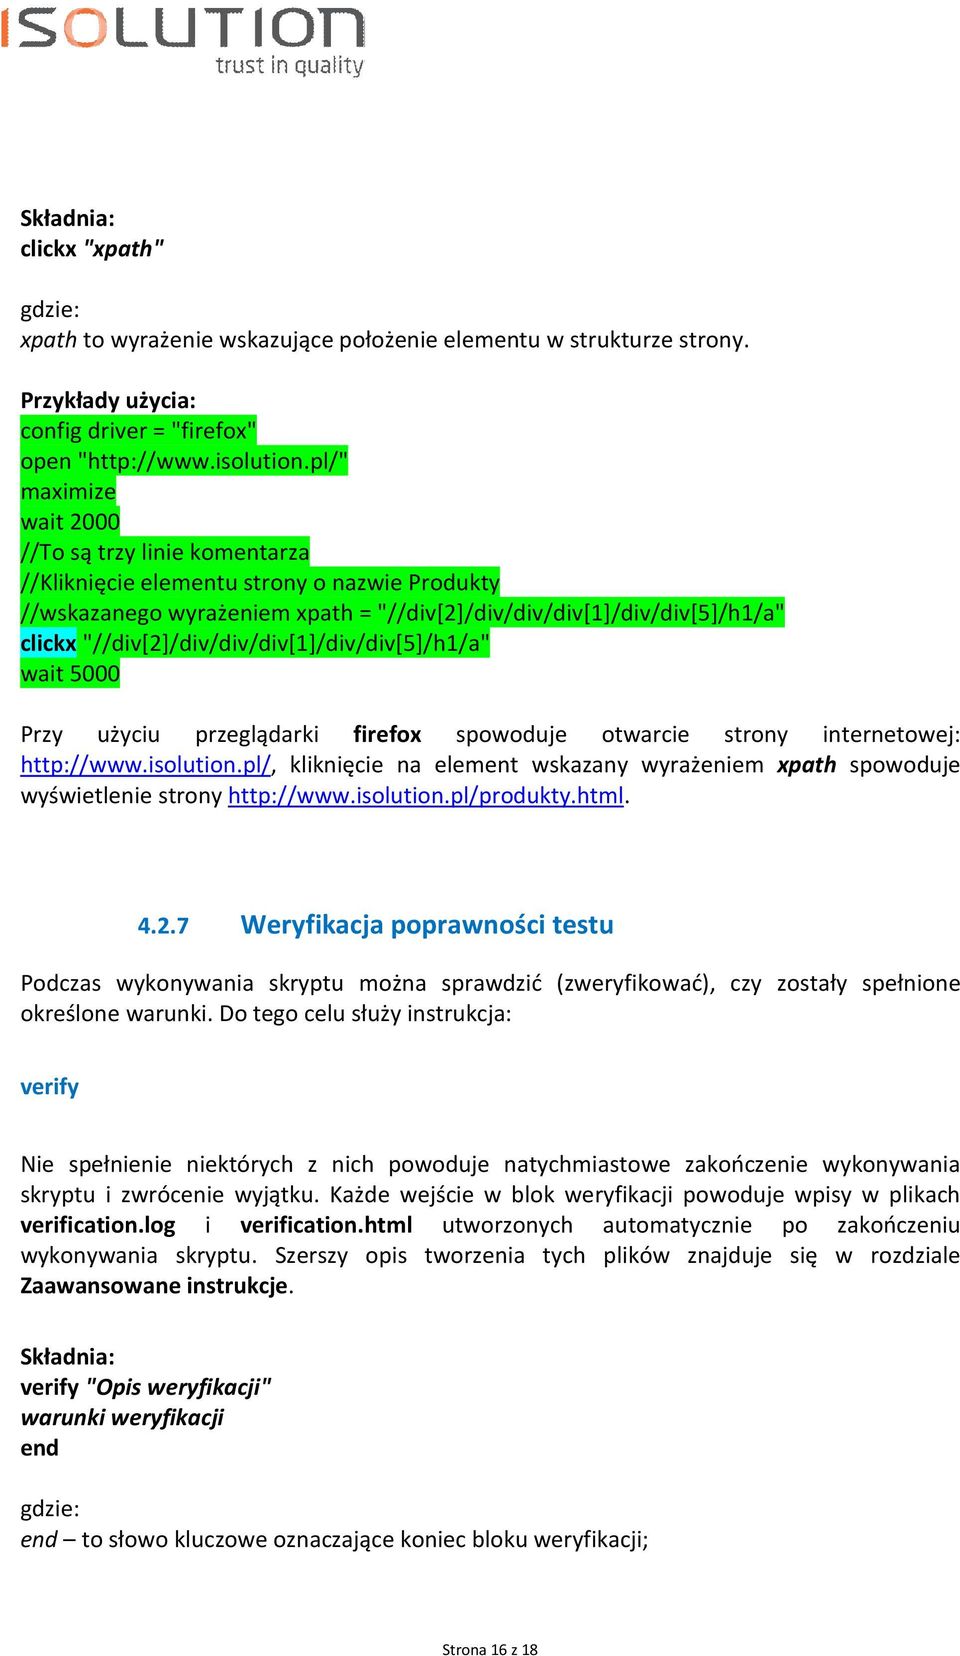 Przy użyciu przeglądarki firefox spowoduje otwarcie strony internetowej: http://www.isolution.pl/, kliknięcie na element wskazany wyrażeniem xpath spowoduje wyświetlenie strony http://www.isolution.pl/produkty.